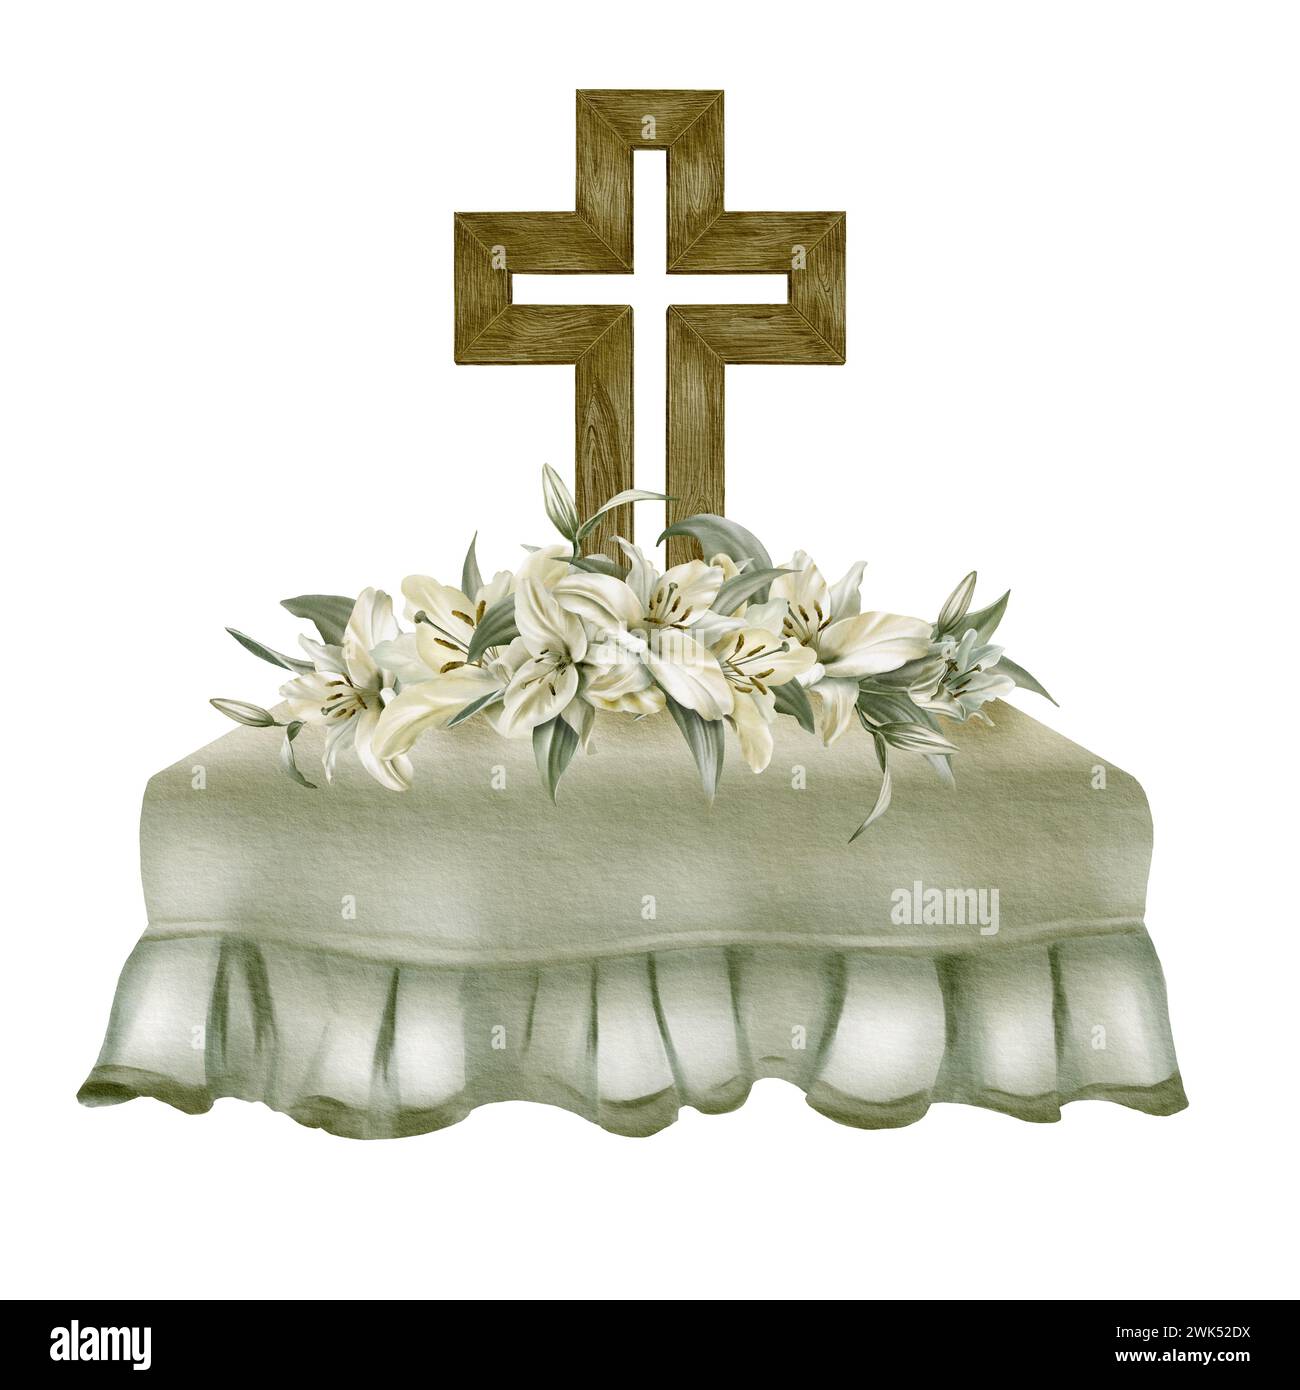 Aquarelle composition religieuse de nappe avec volants, croix orthodoxe en bois, lis blanc dans un schéma de couleurs feuille de sauge. Banque D'Images